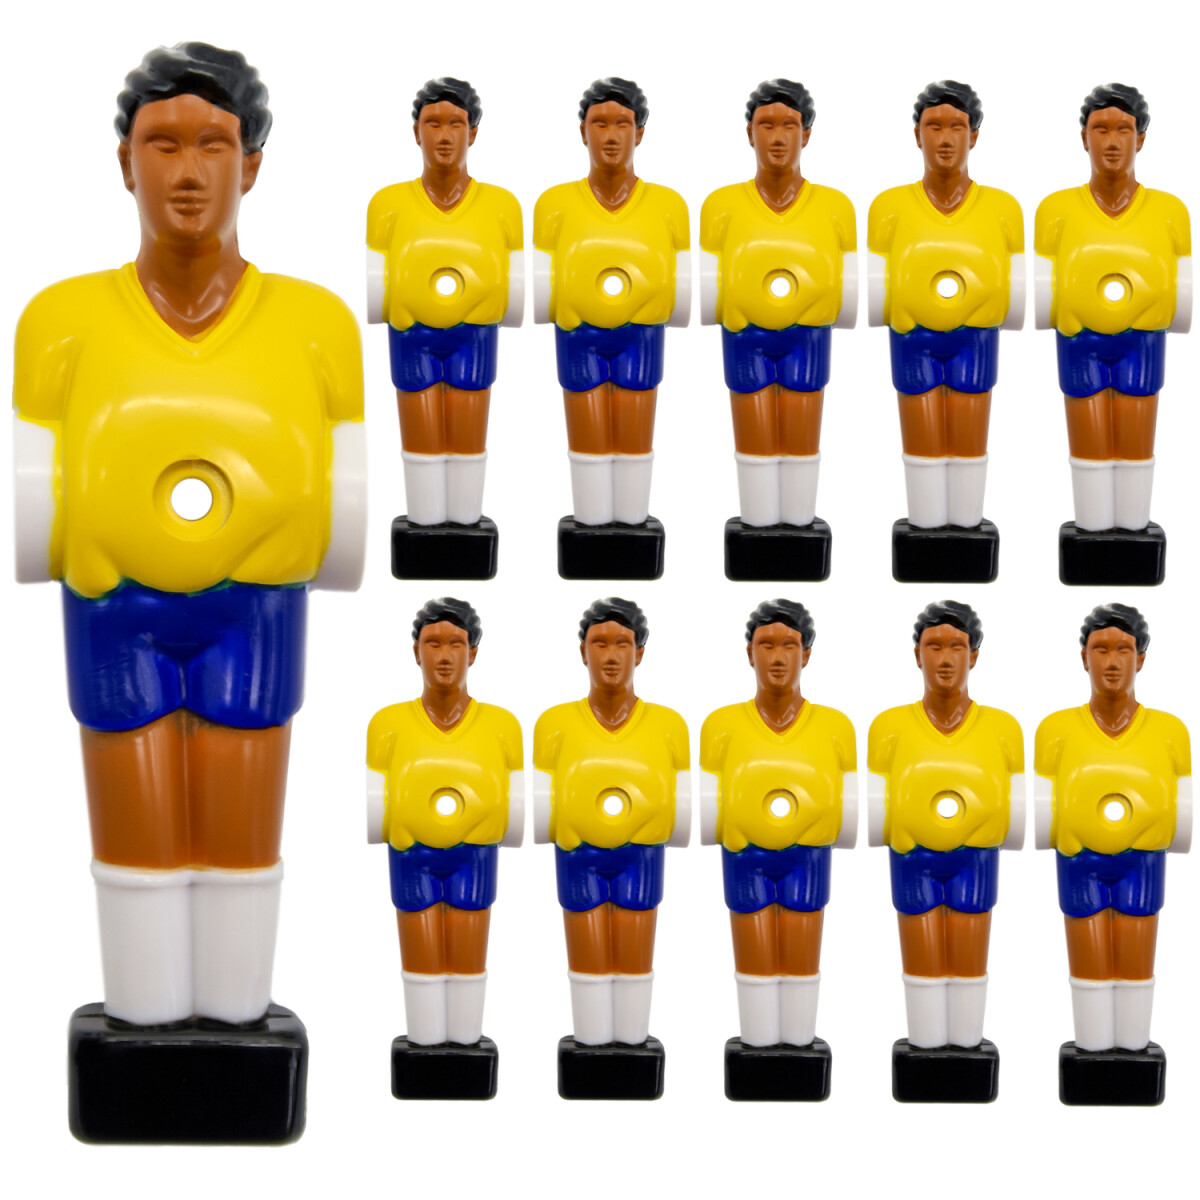 11 Tischkicker Figuren 13mm Brasilien Gelb Blau - Tisch...